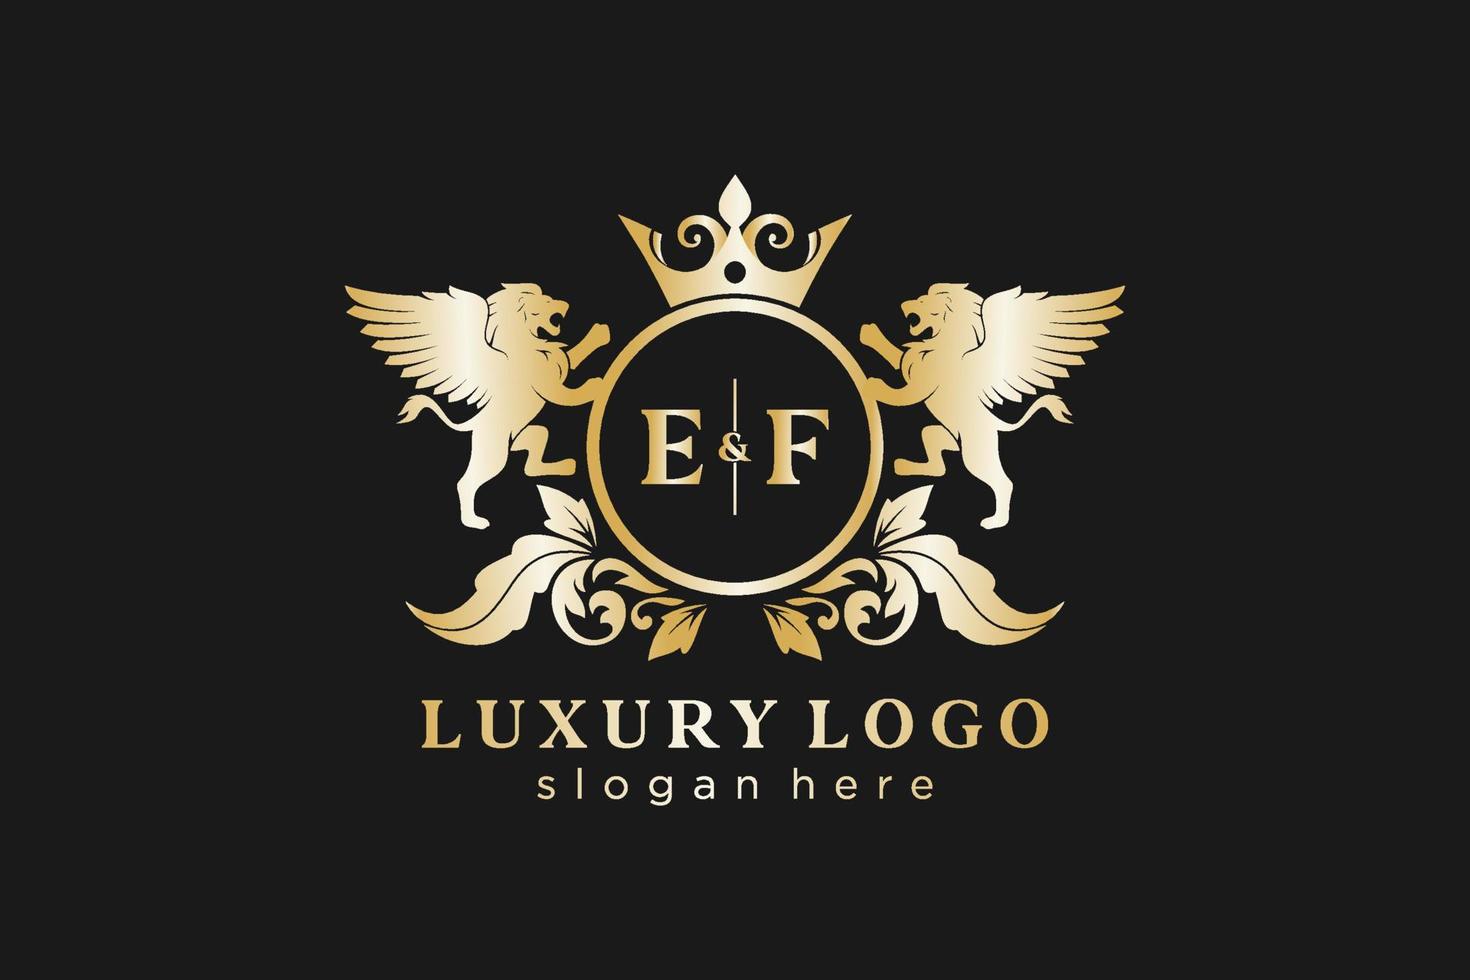 Initial ef Letter Lion Royal Luxury Logo Vorlage in Vektorgrafiken für Restaurant, Lizenzgebühren, Boutique, Café, Hotel, Heraldik, Schmuck, Mode und andere Vektorillustrationen. vektor